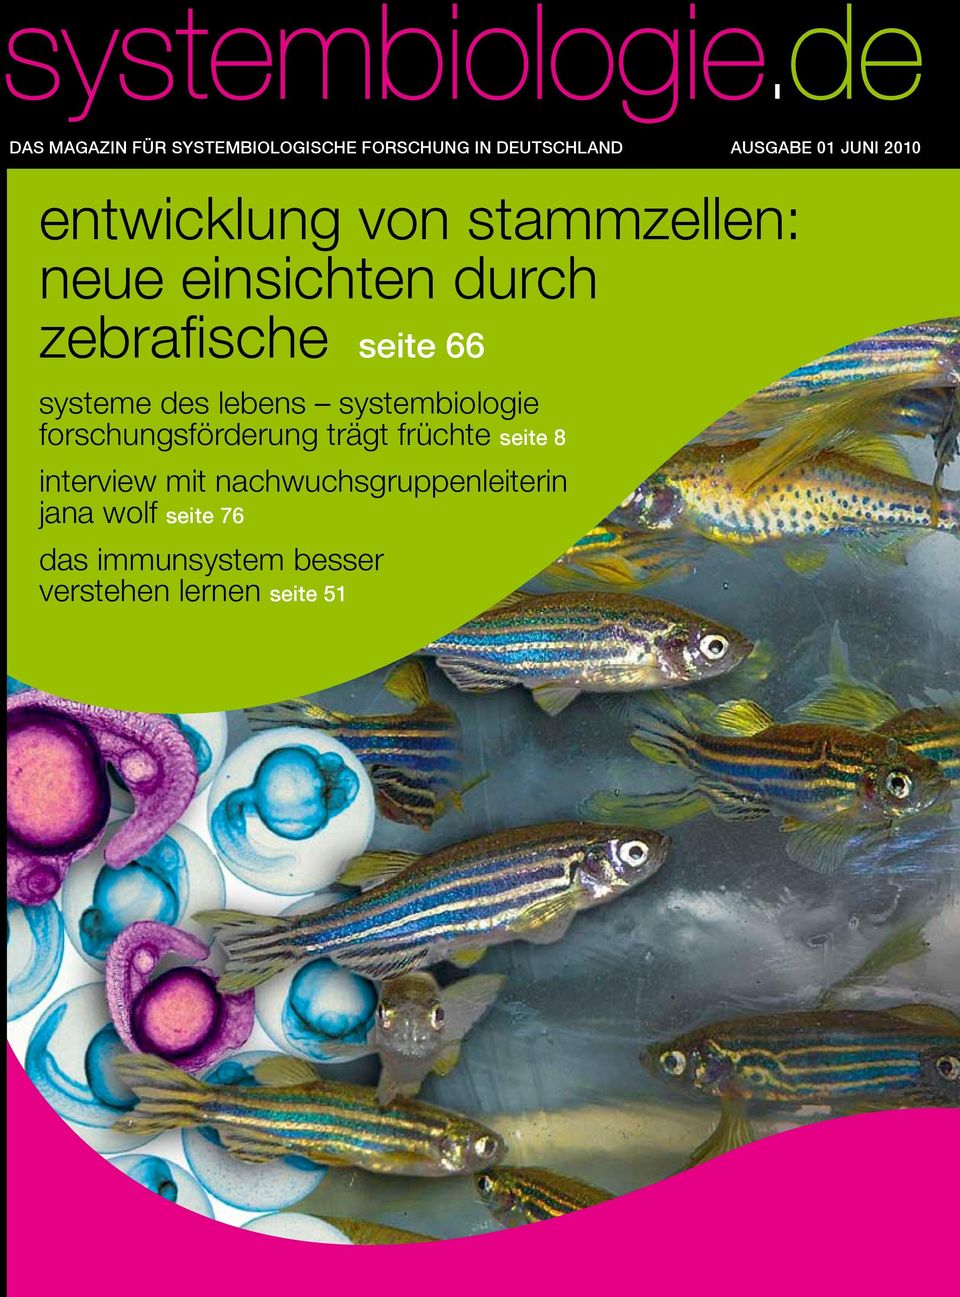 stammzellen: neue einsichten durch zebrafische seite 66 systeme des lebens systembiologie